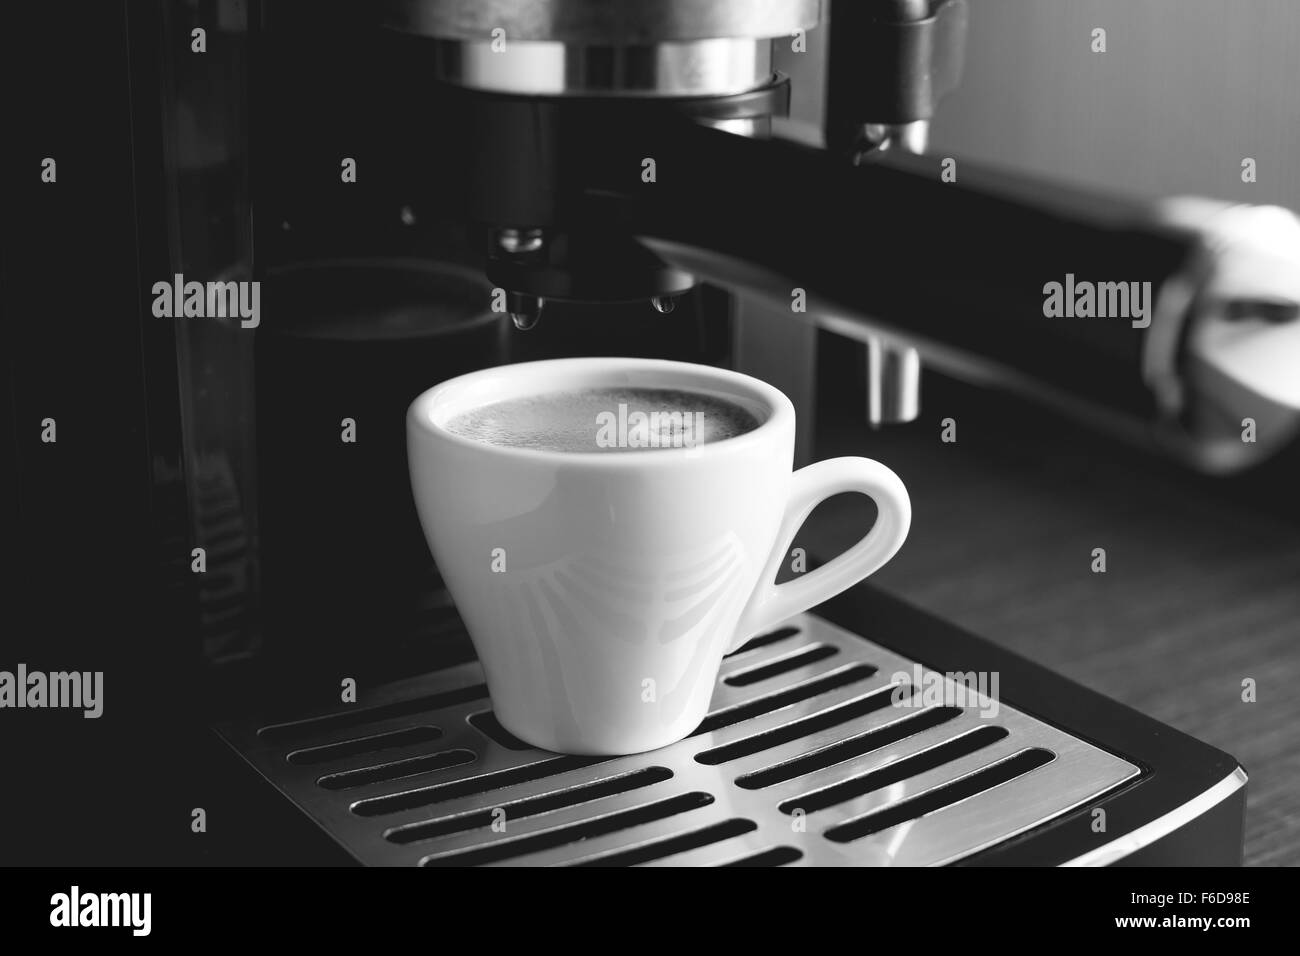 Black and white image of preparing espresso in coffee machine Stock Photo